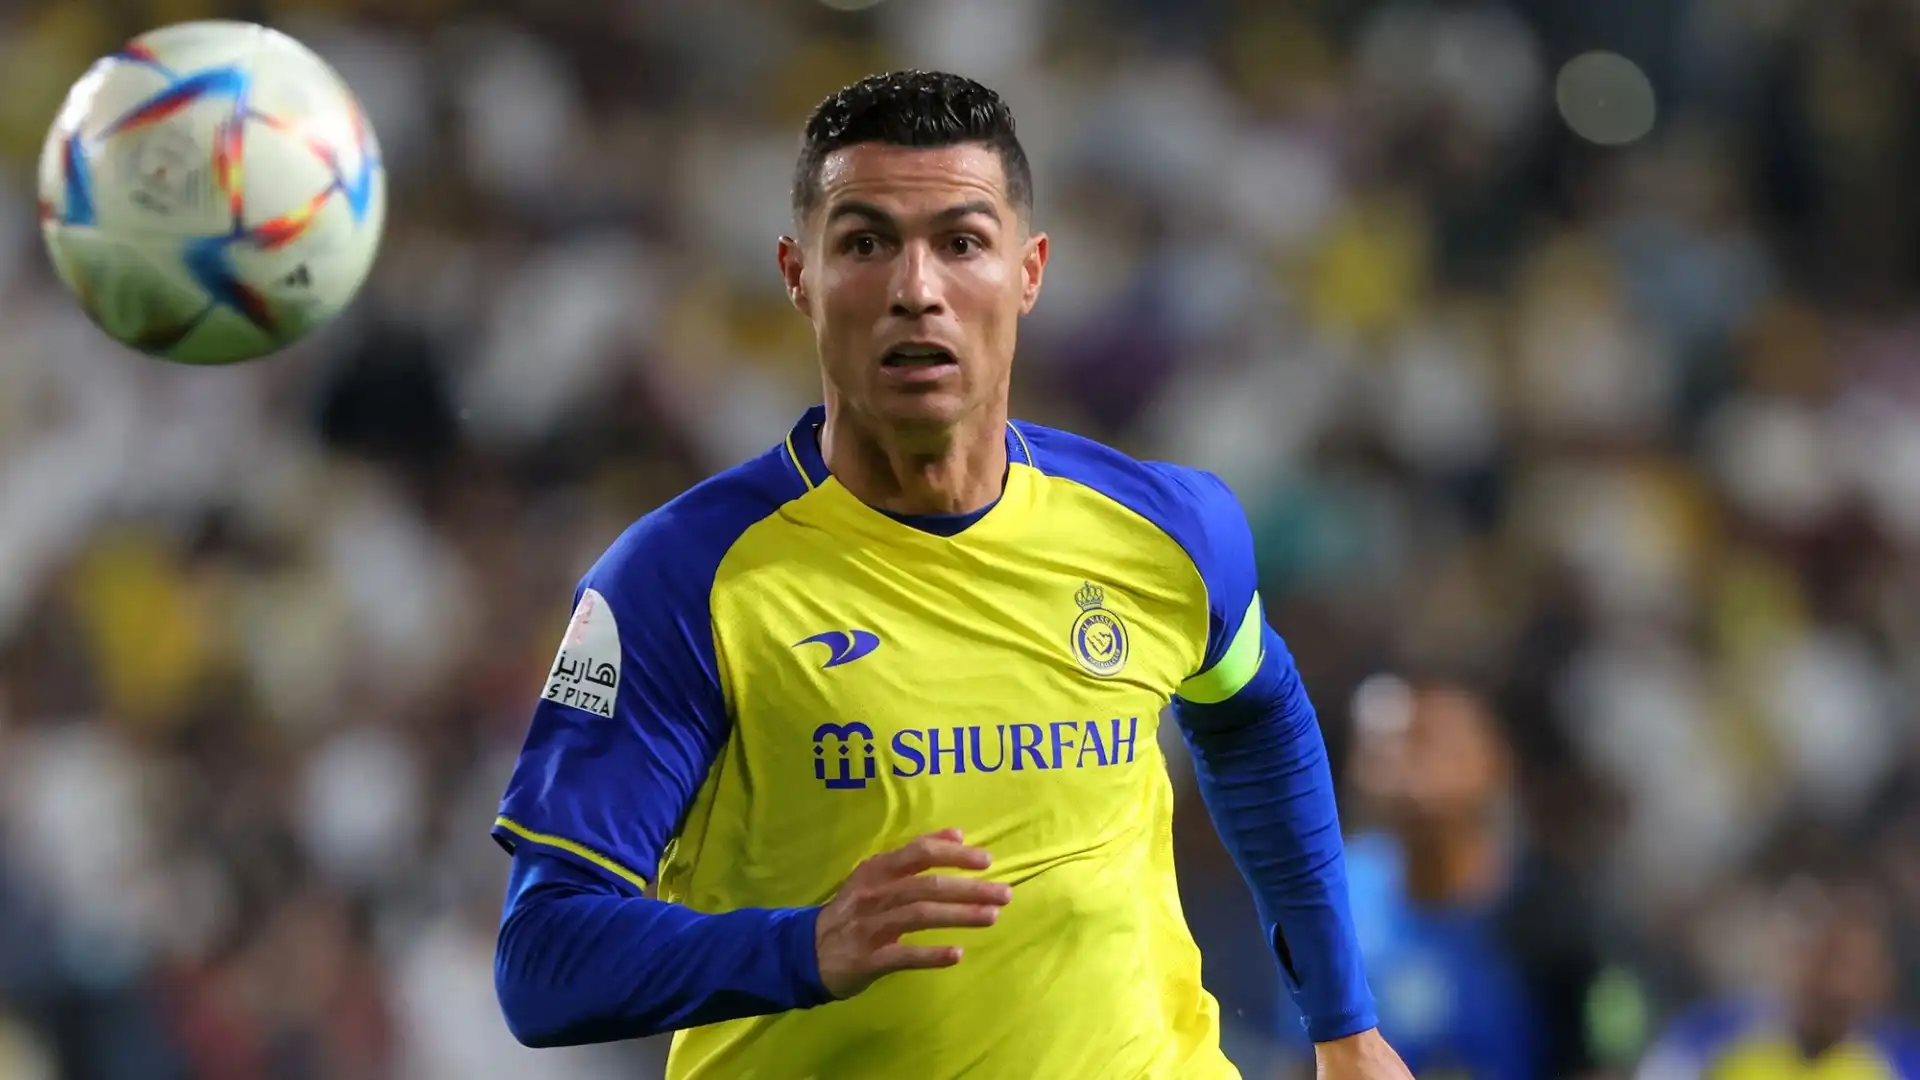 2023: Cristiano Ronaldo (calcio), guadagni totali stimati 136 milioni di euro